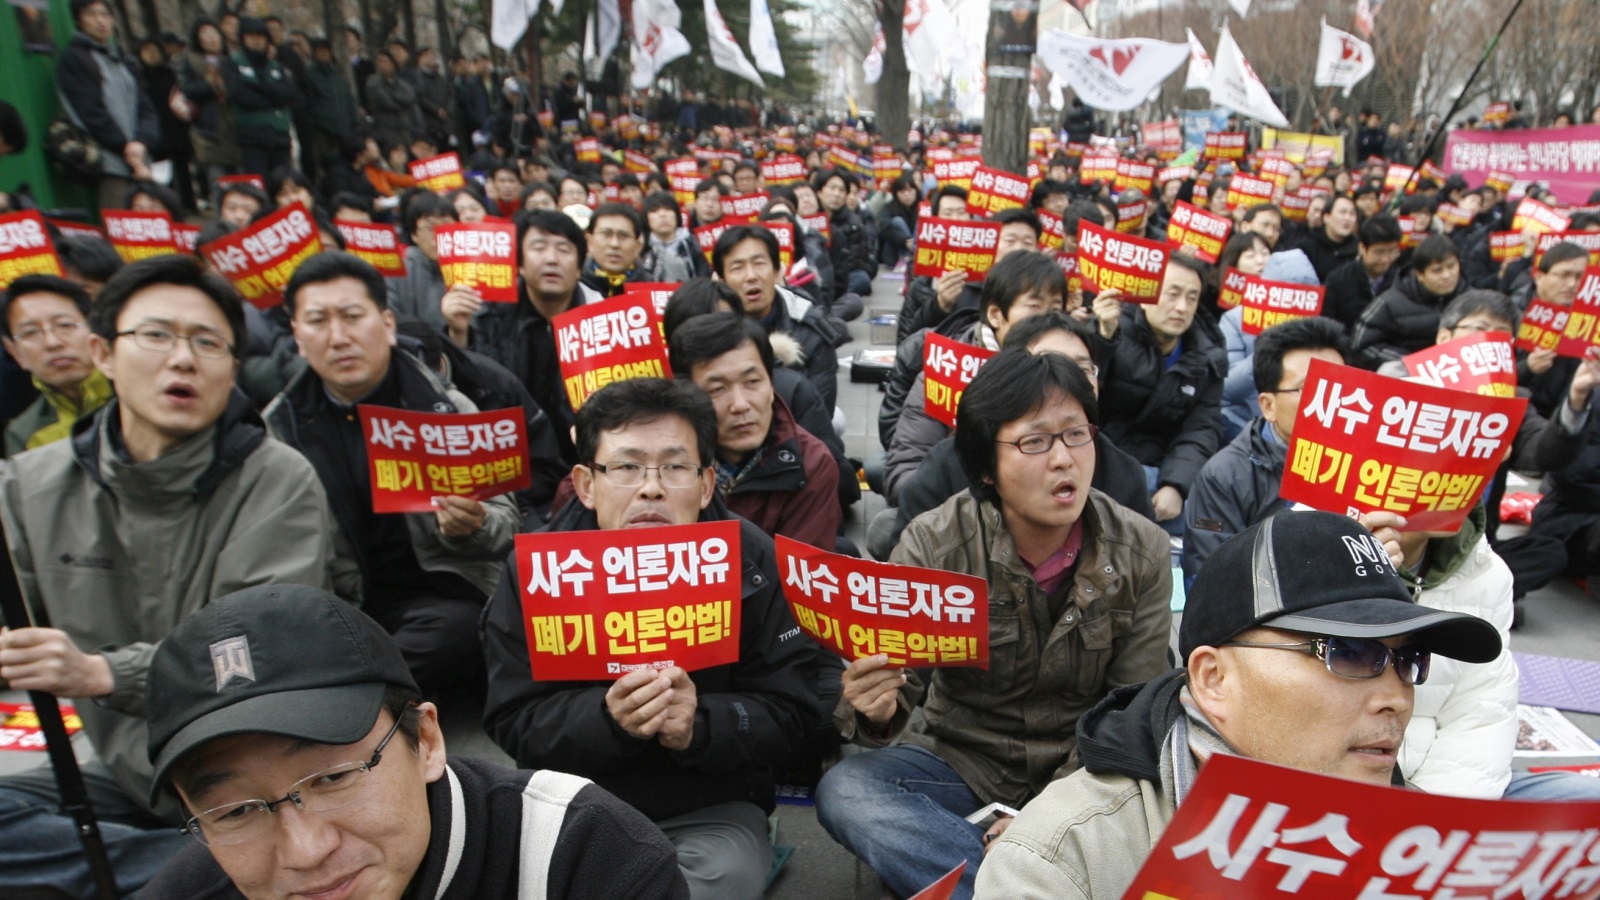 التقارب والتكافل بين الحكومة والتشيبول يلقى معارضة داخل كوريا أخرها الاحتجاجات التي عمت أرجاء البلاد والتي سلطت الضوء على العلاقة الحميمة التي تجمع النخبة السياسية بالشركات الكبرى